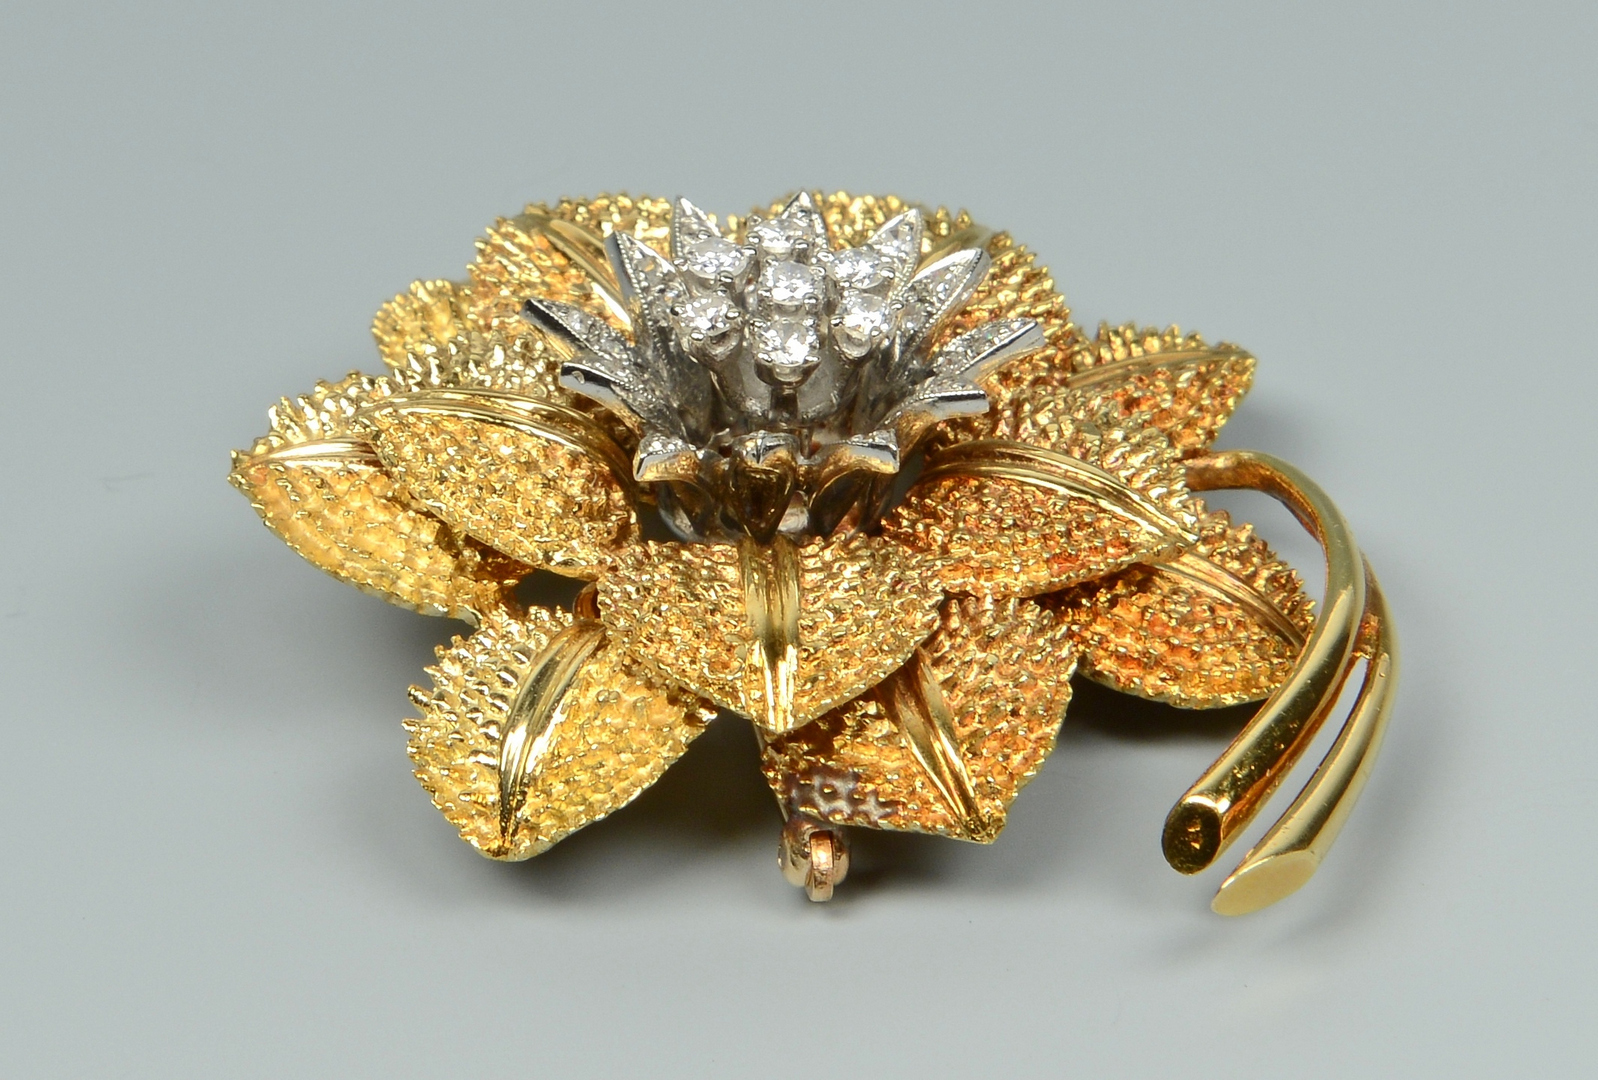 Lot 3088063: 14k Flower pendant/brooch w/ diamonds